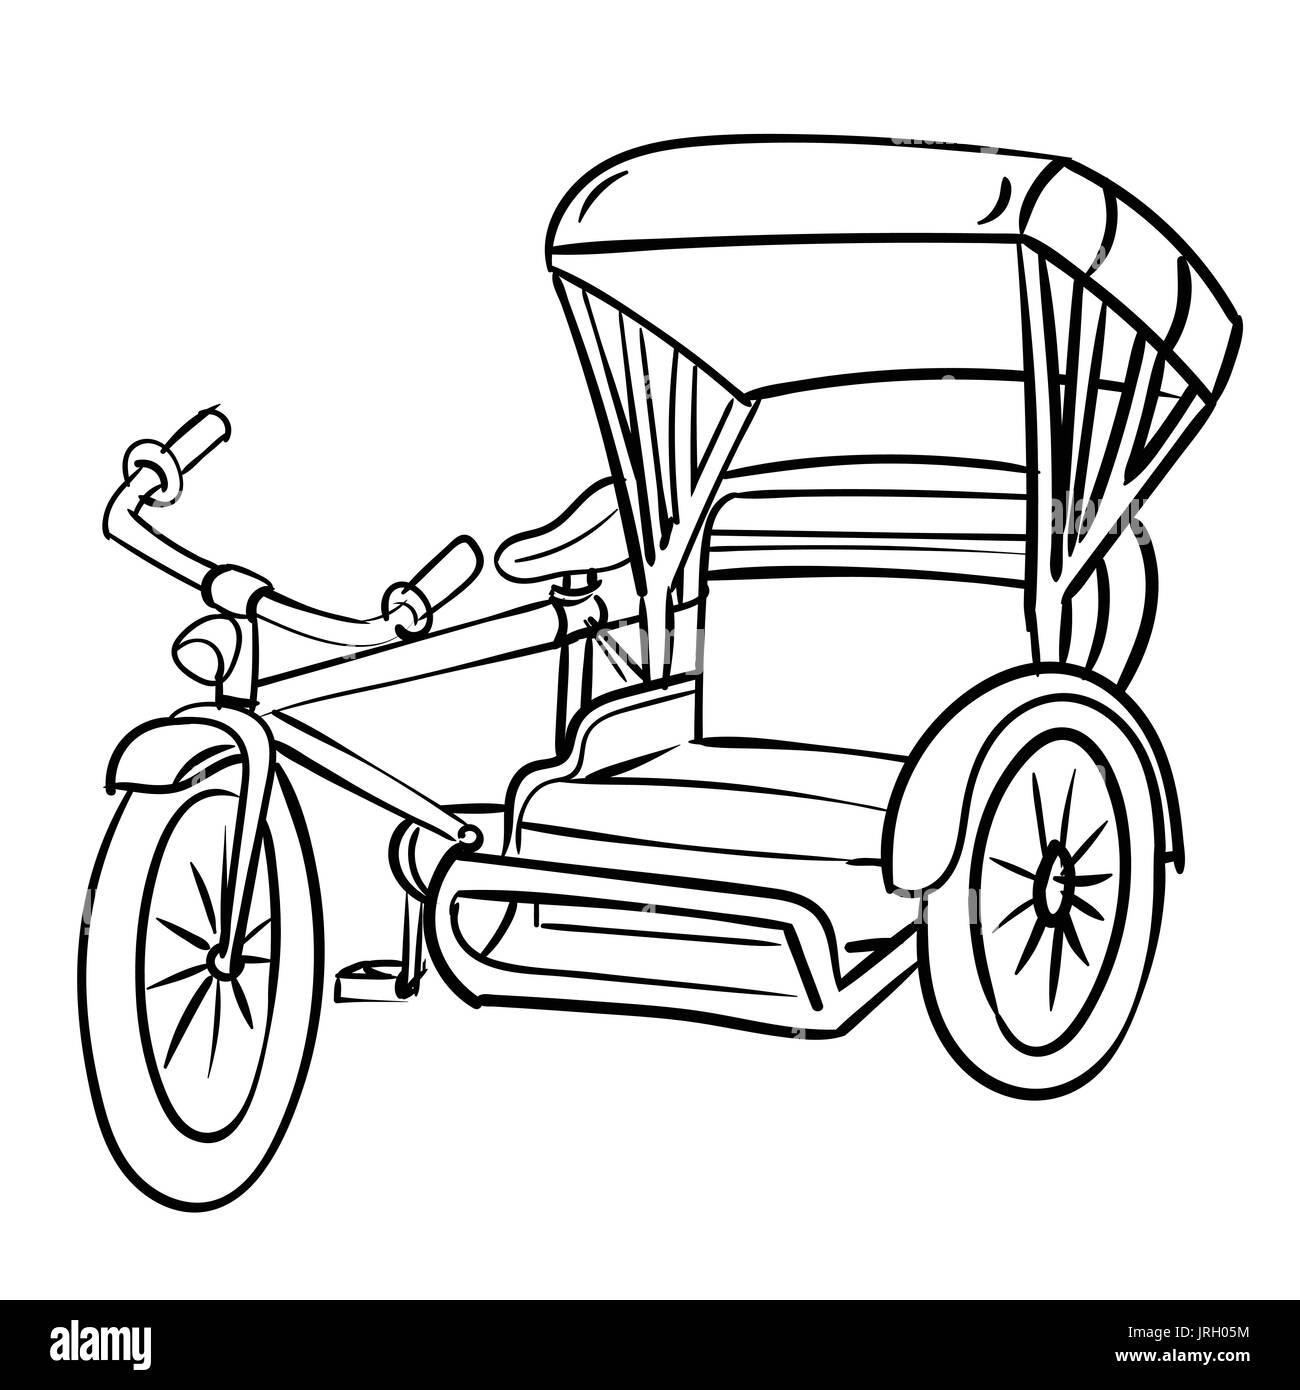 Hand gezeichnete Skizze Dreirad, schwarz / weiß einfache Linie Vektor-Illustration für Coloring Book - Linie gezeichnet Vektor Stock Vektor